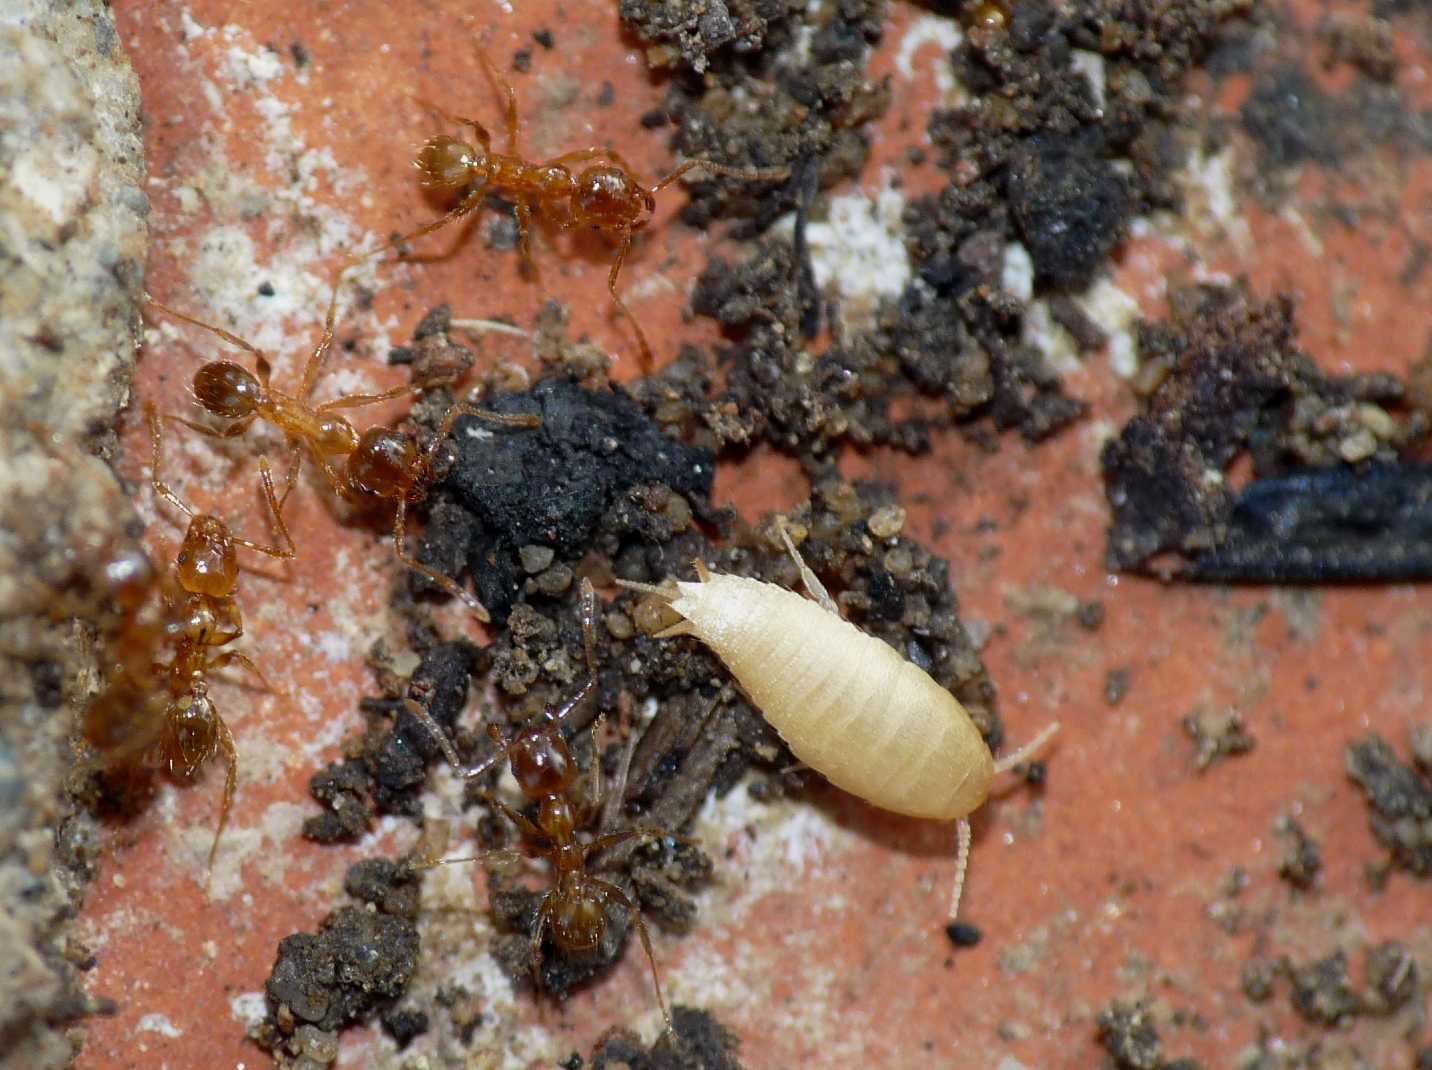 Ospiti delle formiche (galleria fotografica)